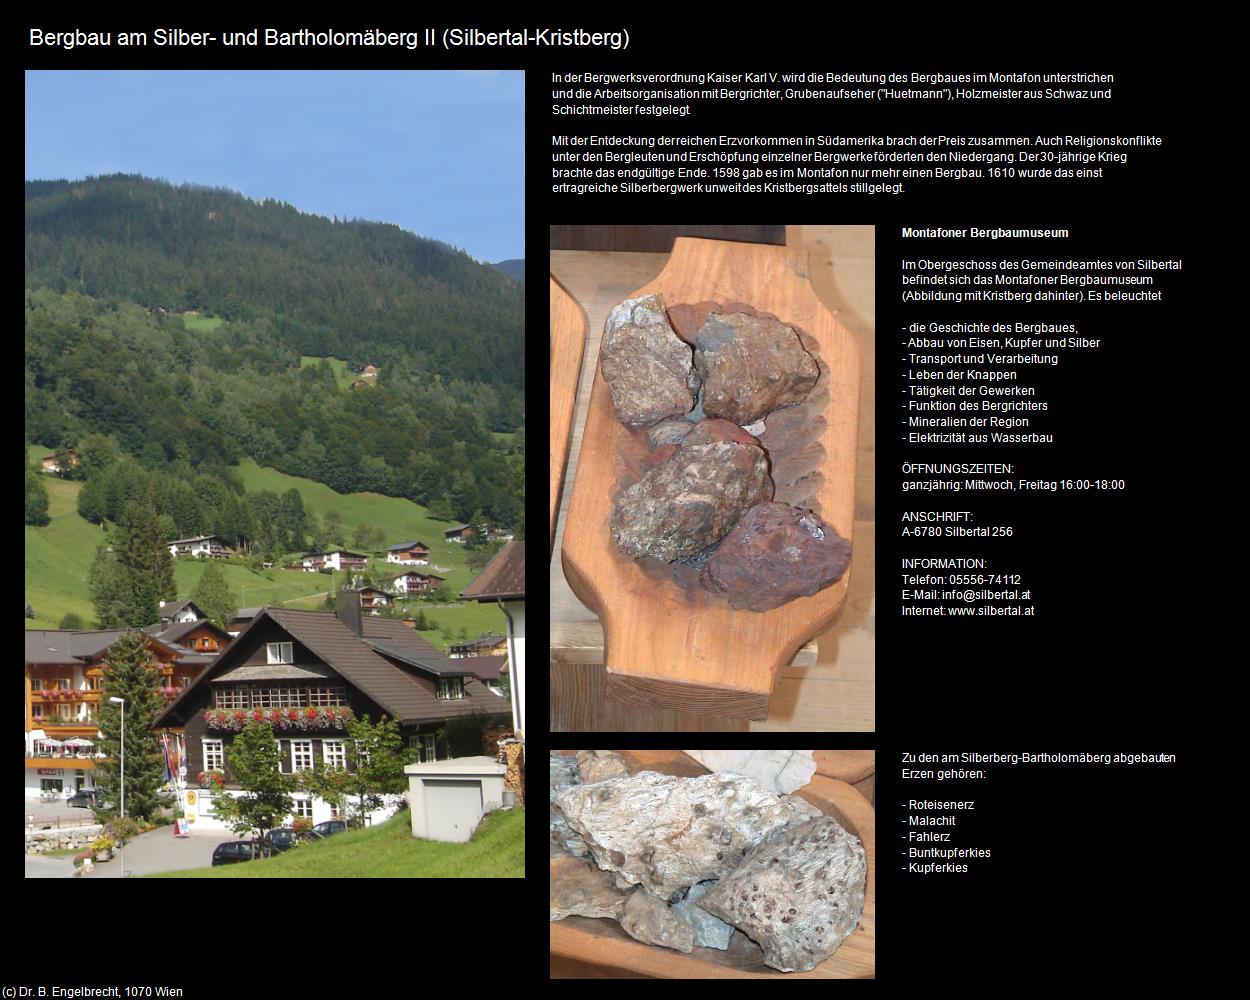 Bergbau am Silber- und Bartholomäberg II (Silbertal) in Kulturatlas-VORARLBERG